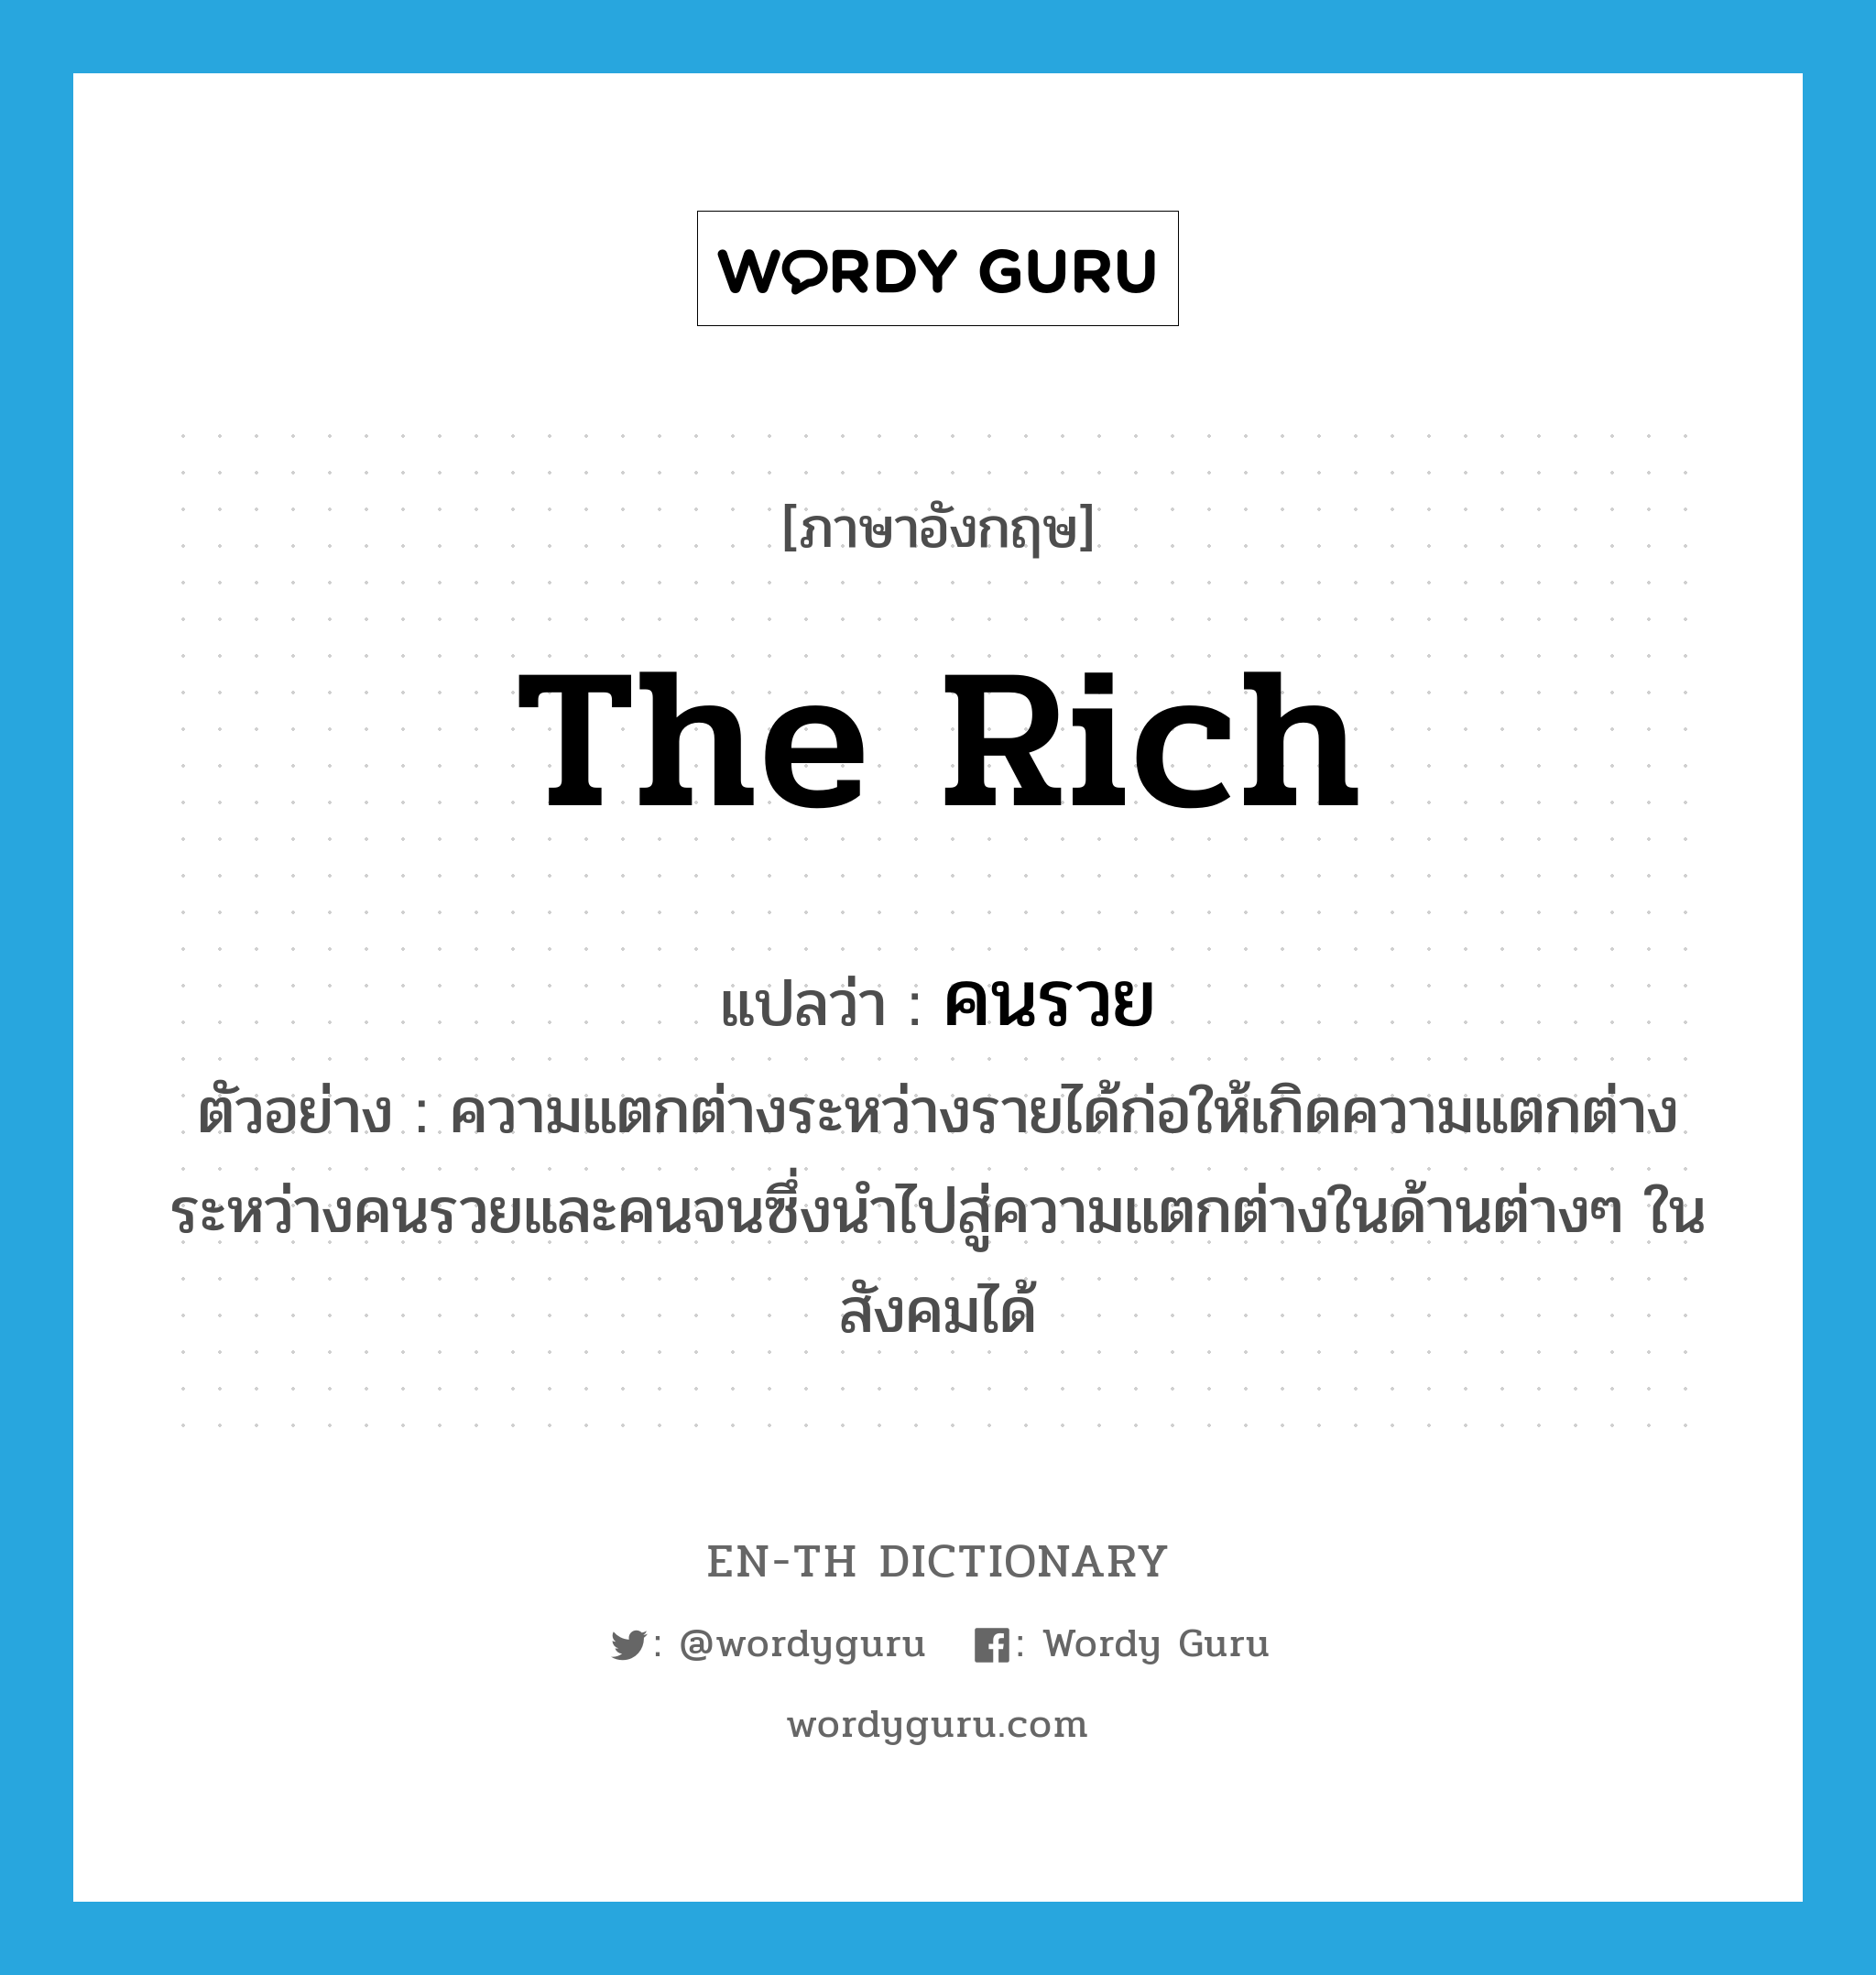 คนรวย ภาษาอังกฤษ?, คำศัพท์ภาษาอังกฤษ คนรวย แปลว่า the rich ประเภท N ตัวอย่าง ความแตกต่างระหว่างรายได้ก่อให้เกิดความแตกต่างระหว่างคนรวยและคนจนซึ่งนำไปสู่ความแตกต่างในด้านต่างๆ ในสังคมได้ หมวด N